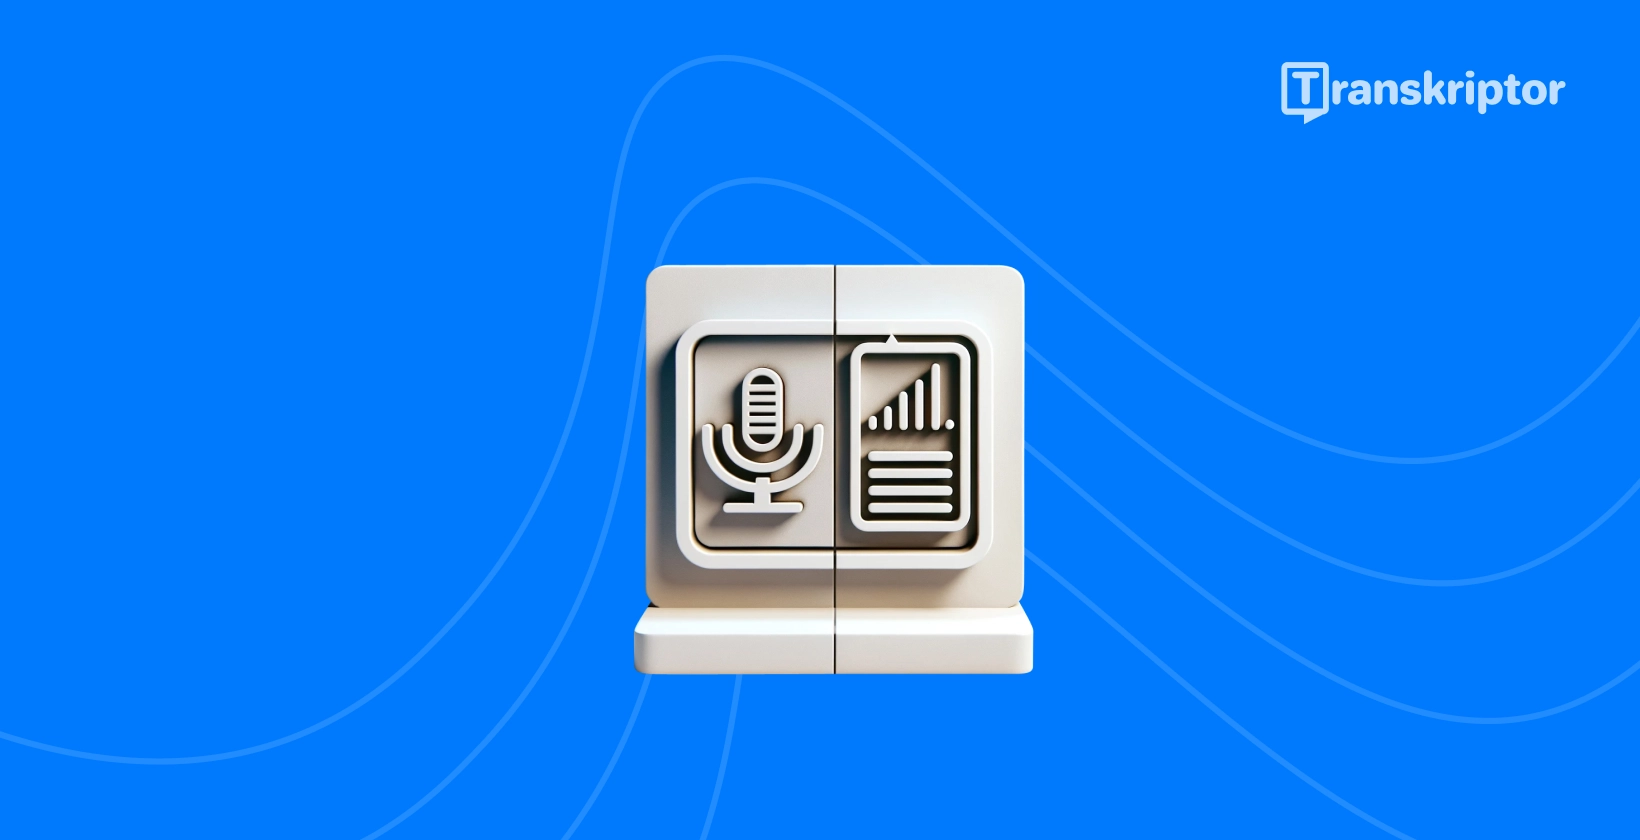 Subtiitrite ja transkriptsioonide erinevused kuvatakse mikrofoni ja dokumendi ikoonidega.